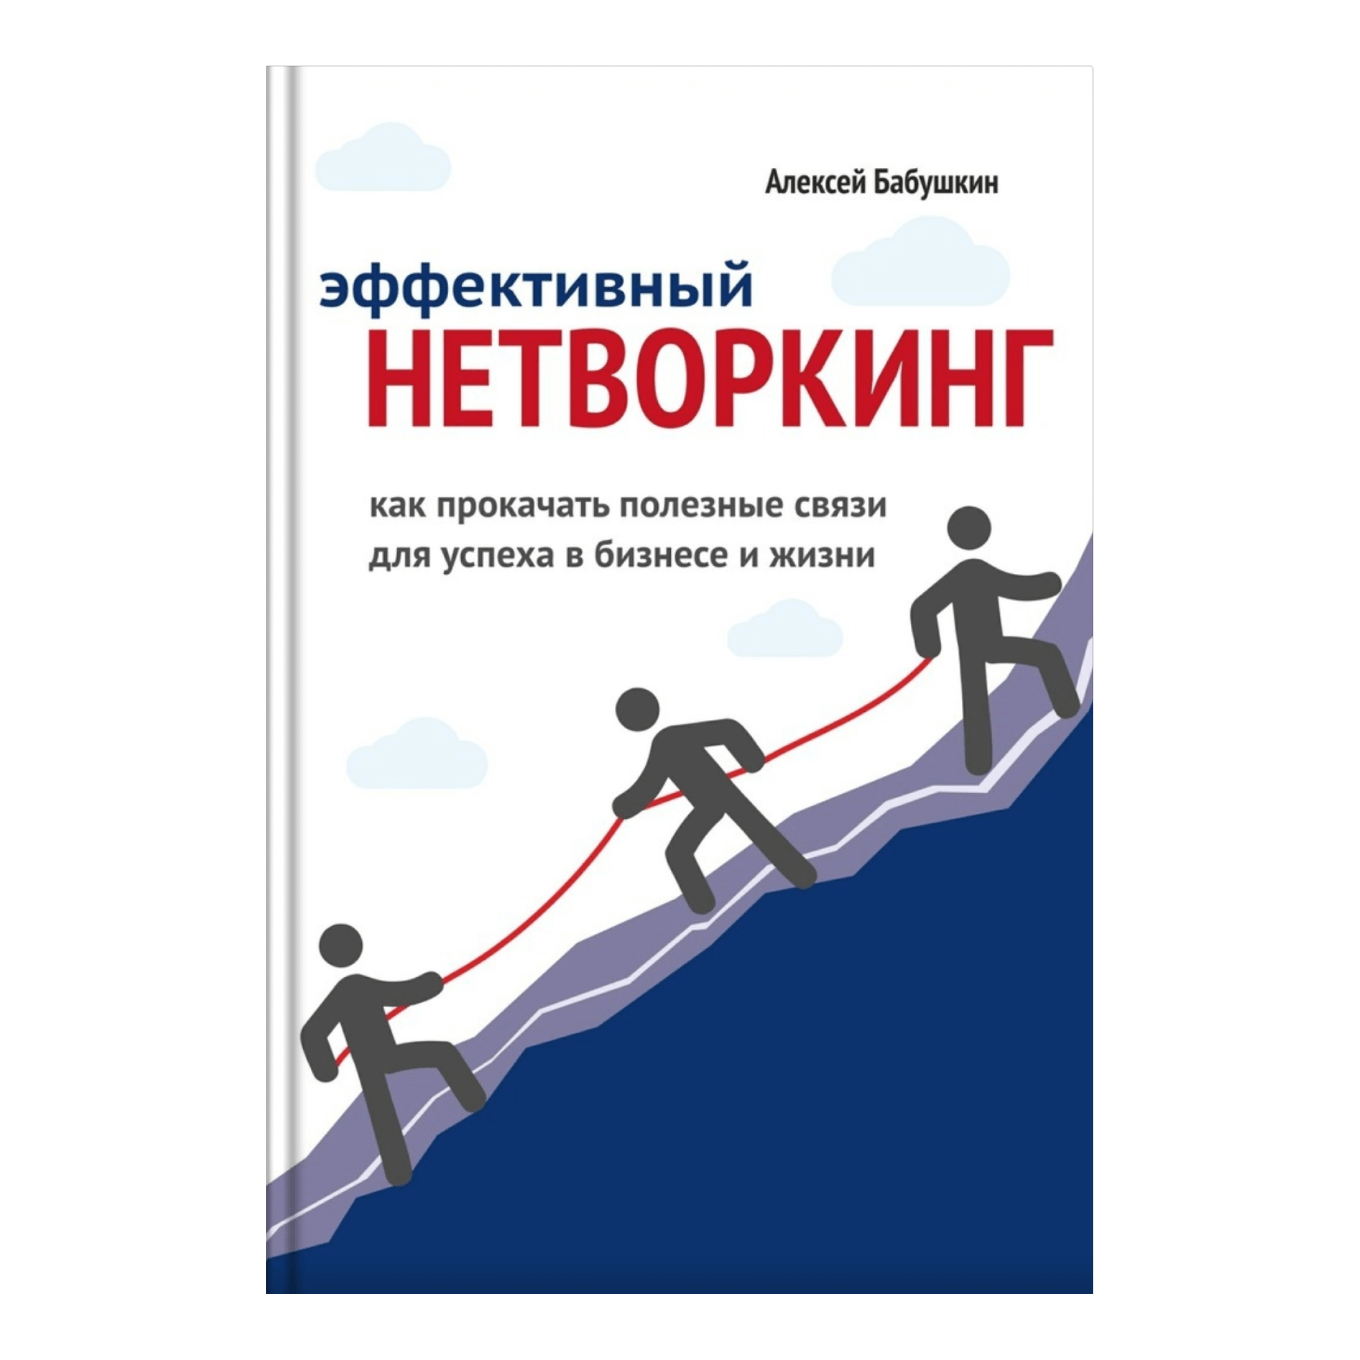 «Эффективный нетворкинг. Как прокачать полезные связи для успеха в бизнесе и жизни», Алексей Бабушкин